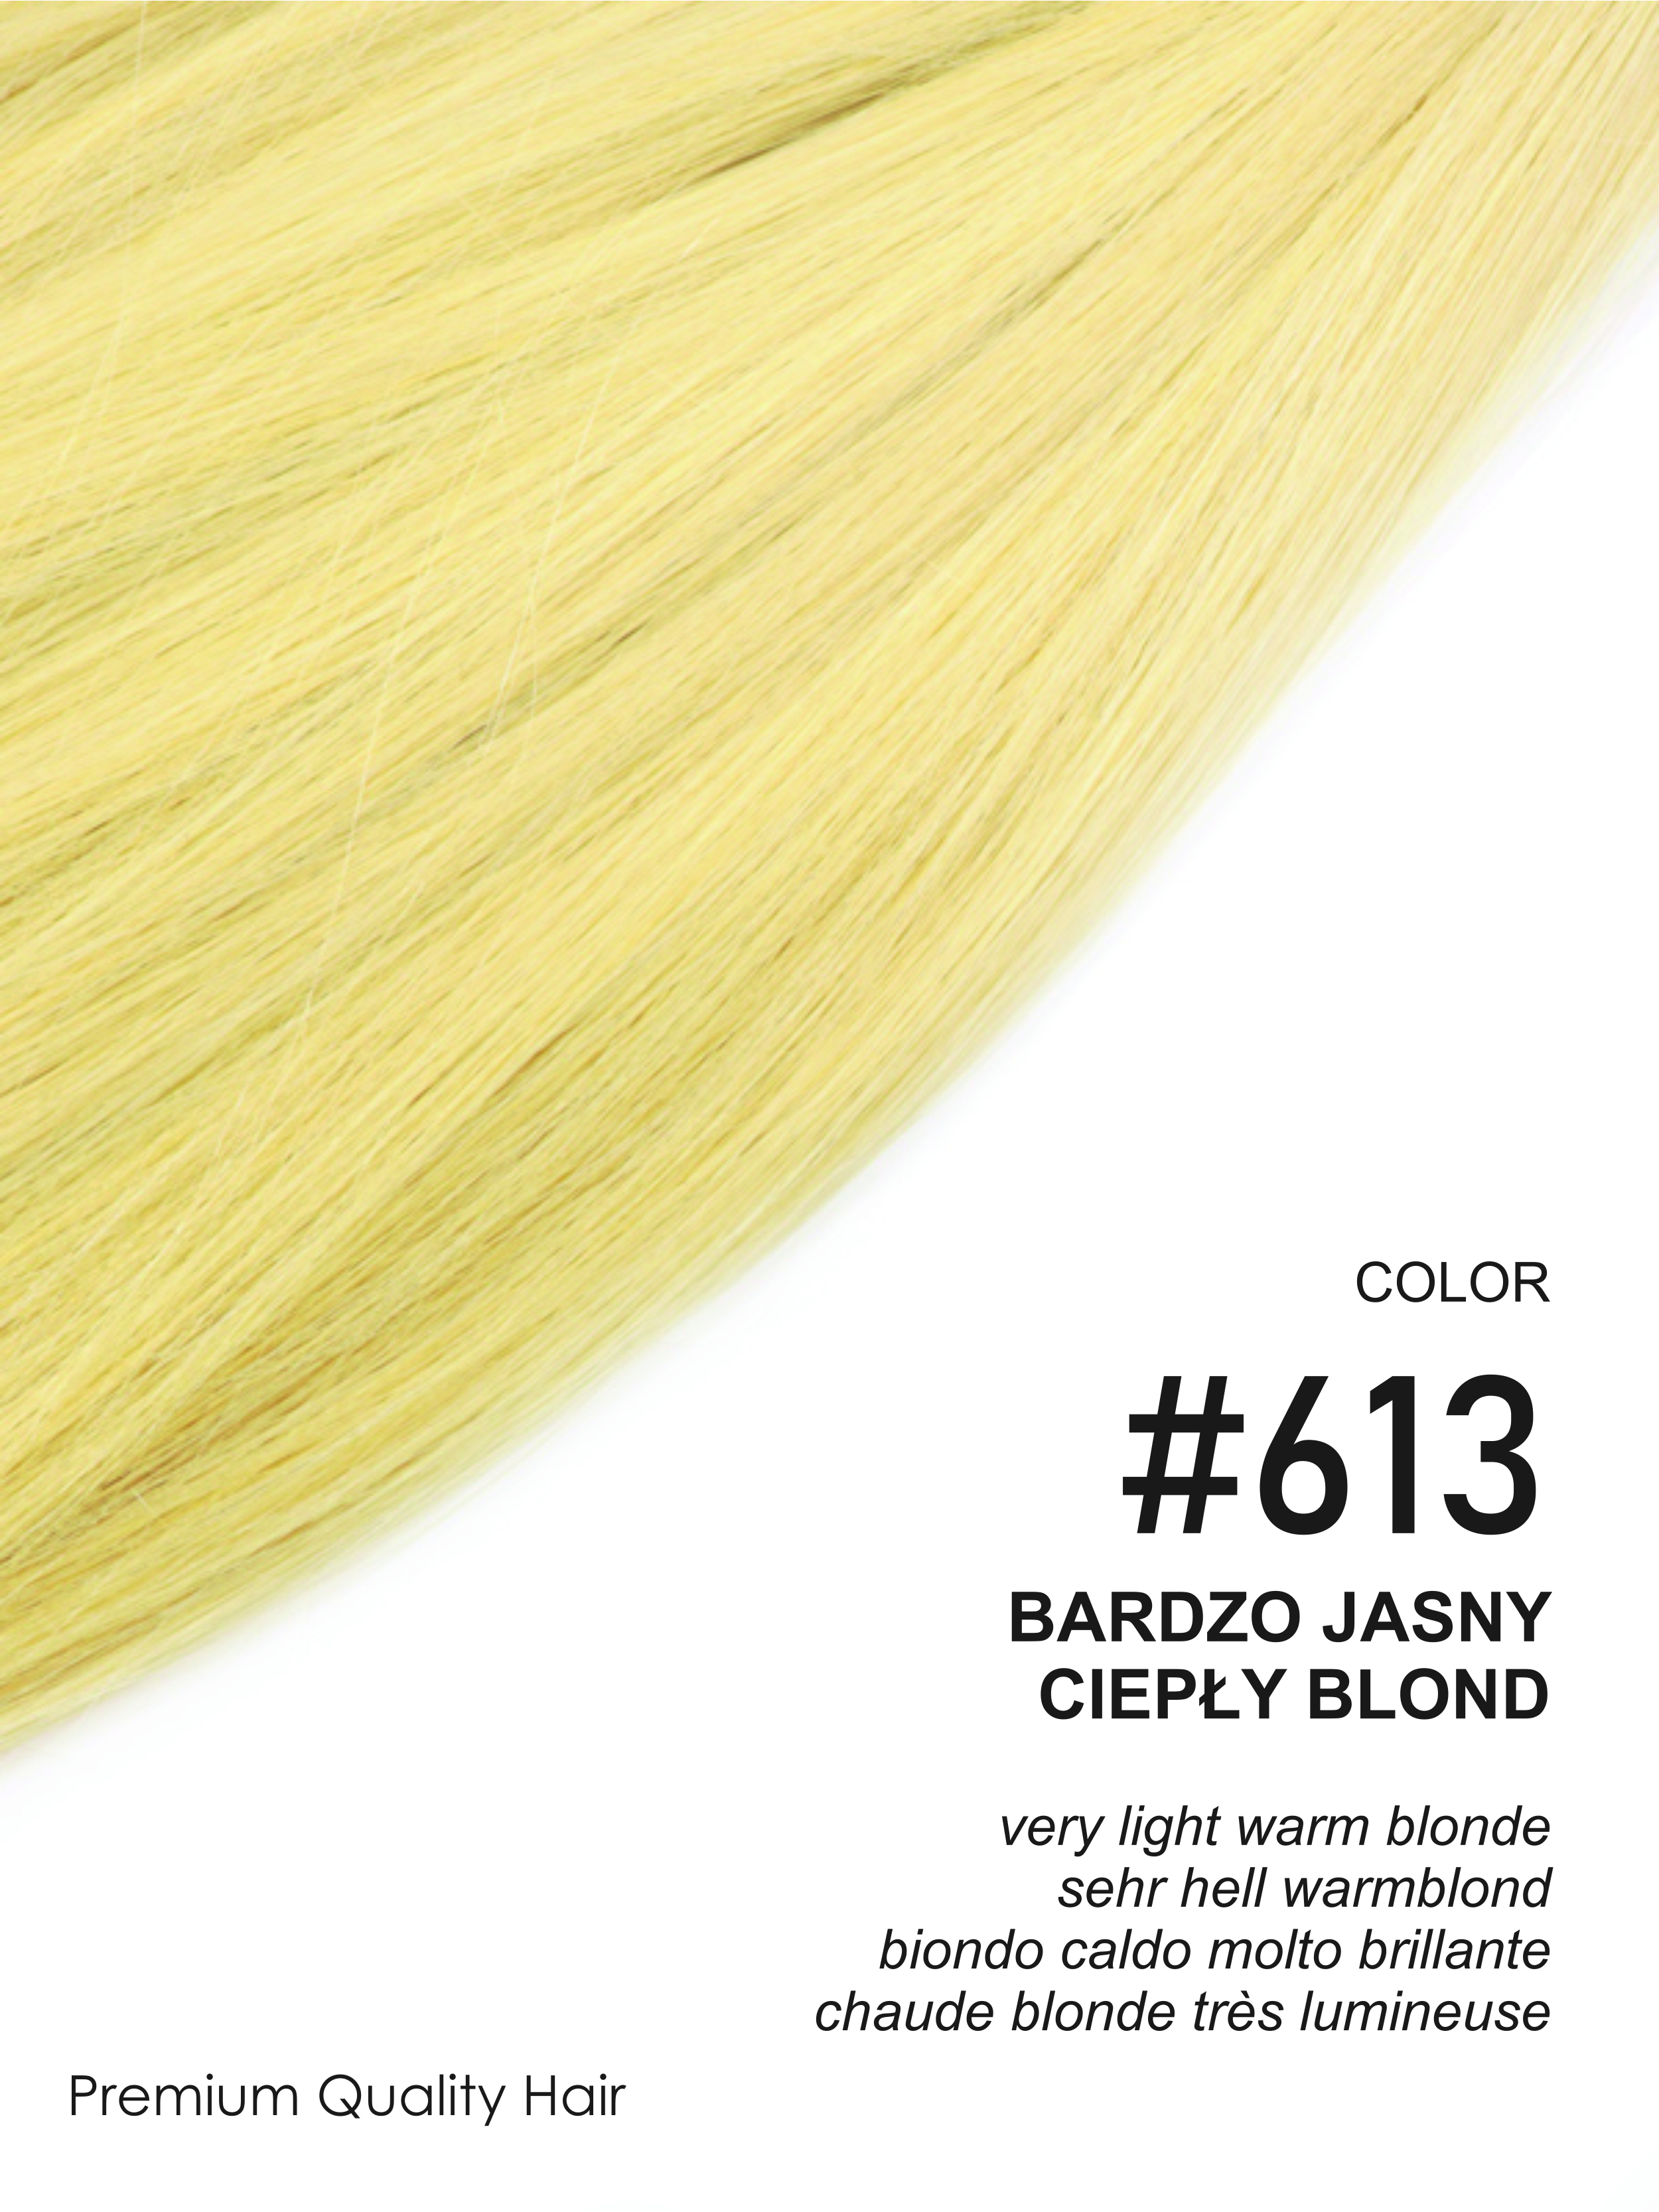 Beauty for You Slovanské vlasy - mikro pásky 2 cm, vlasy 35 cm, pro sendvičovou metodu